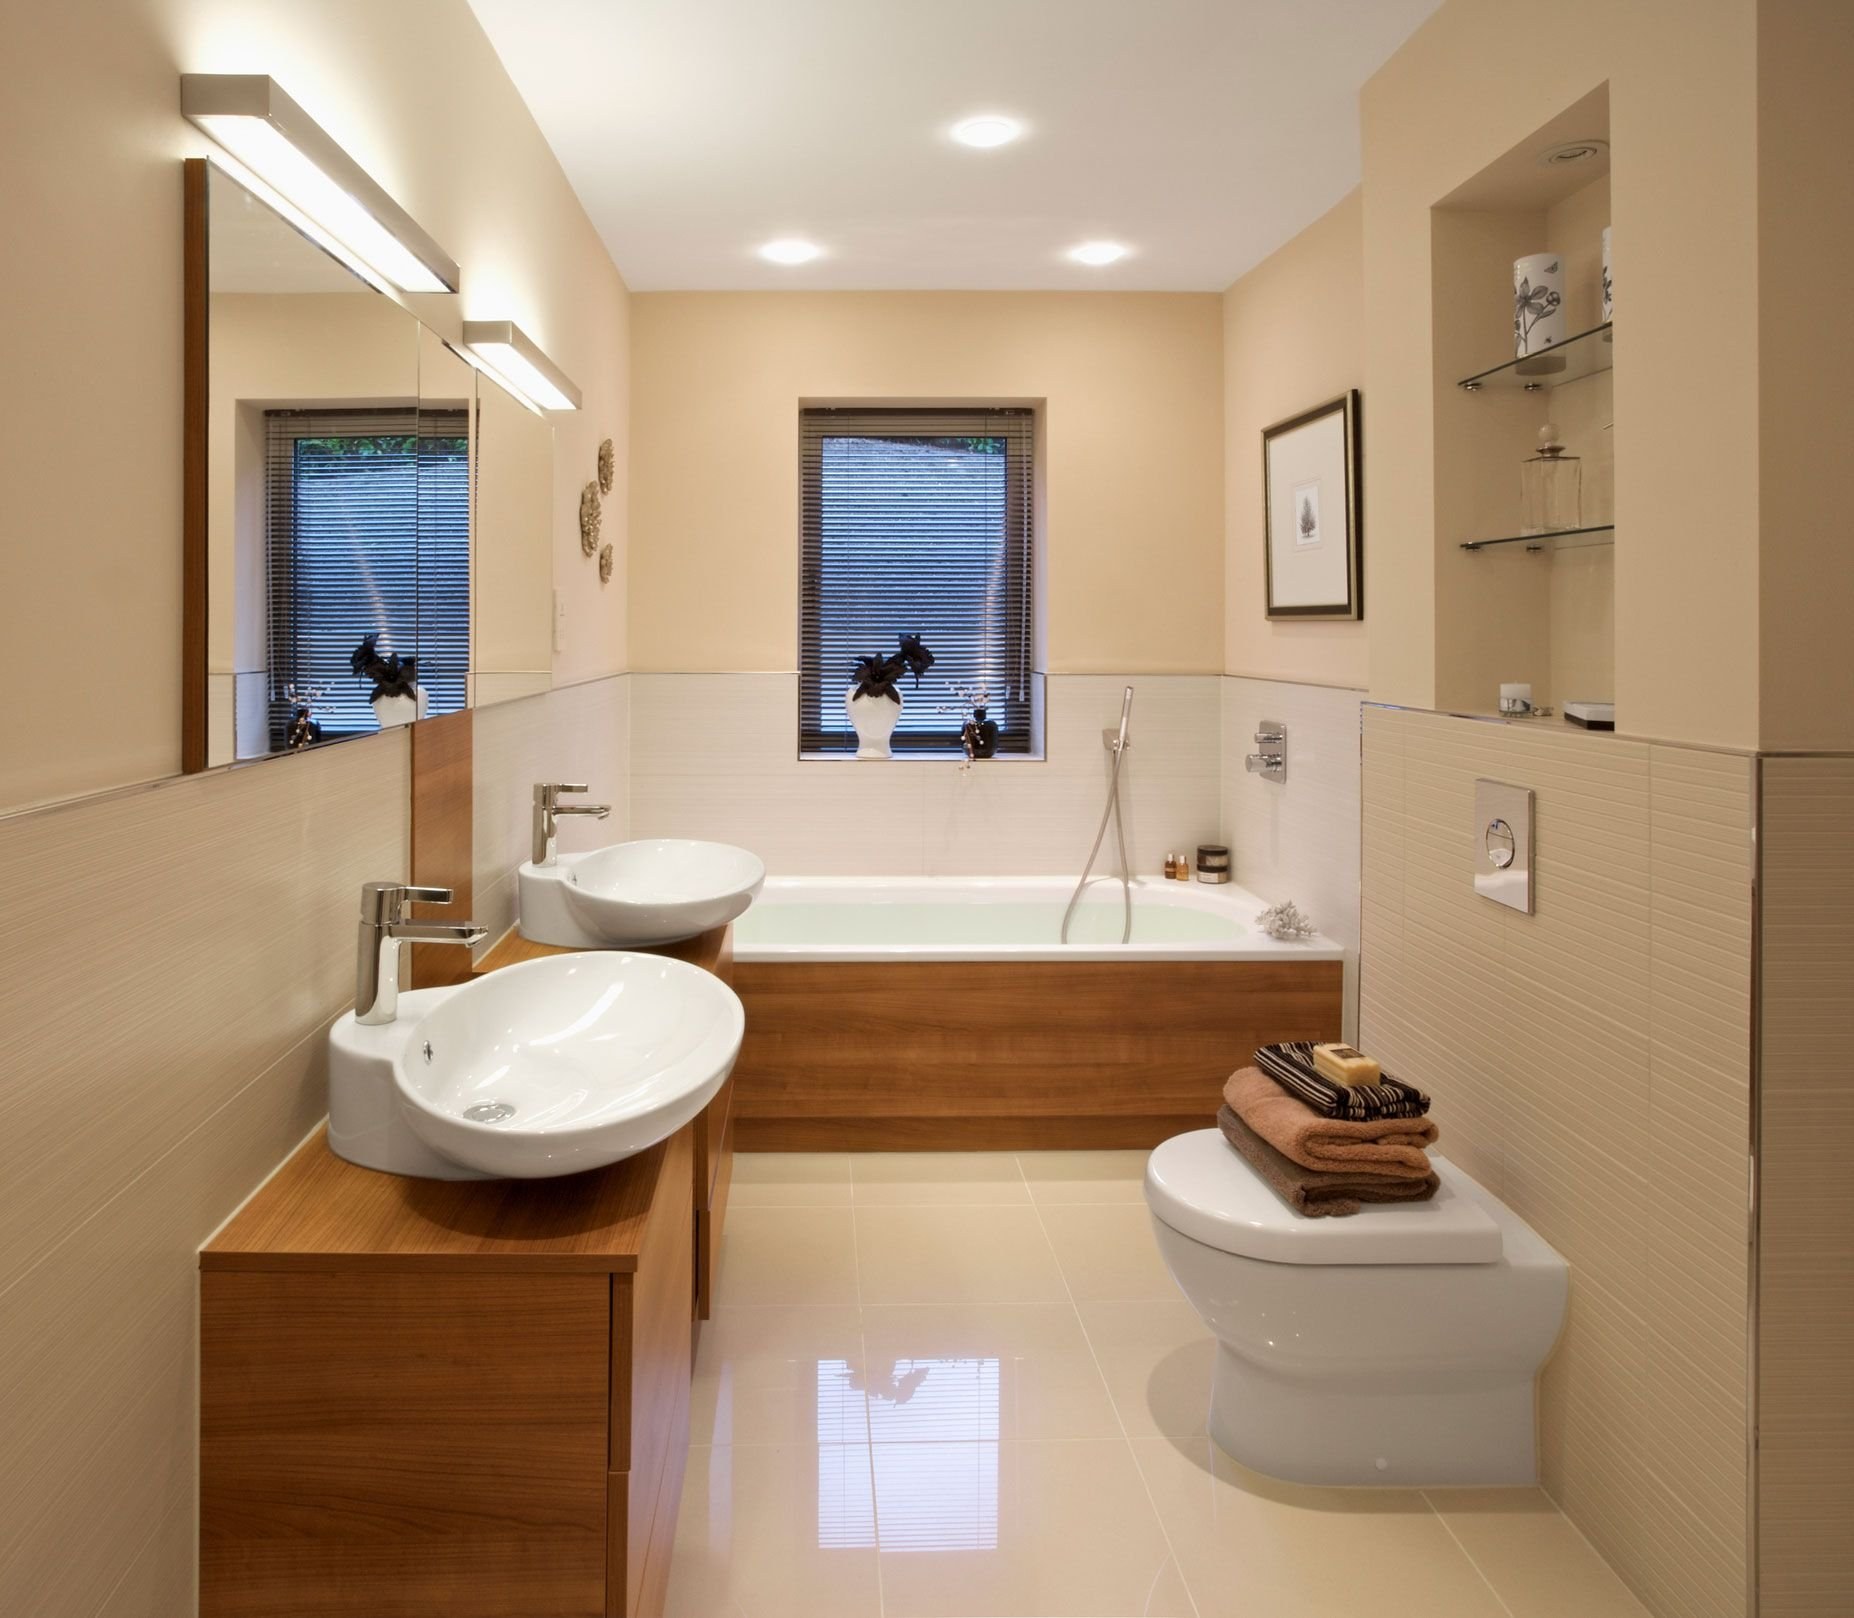 проект ванной комнаты с туалетом 6м2 в частном доме